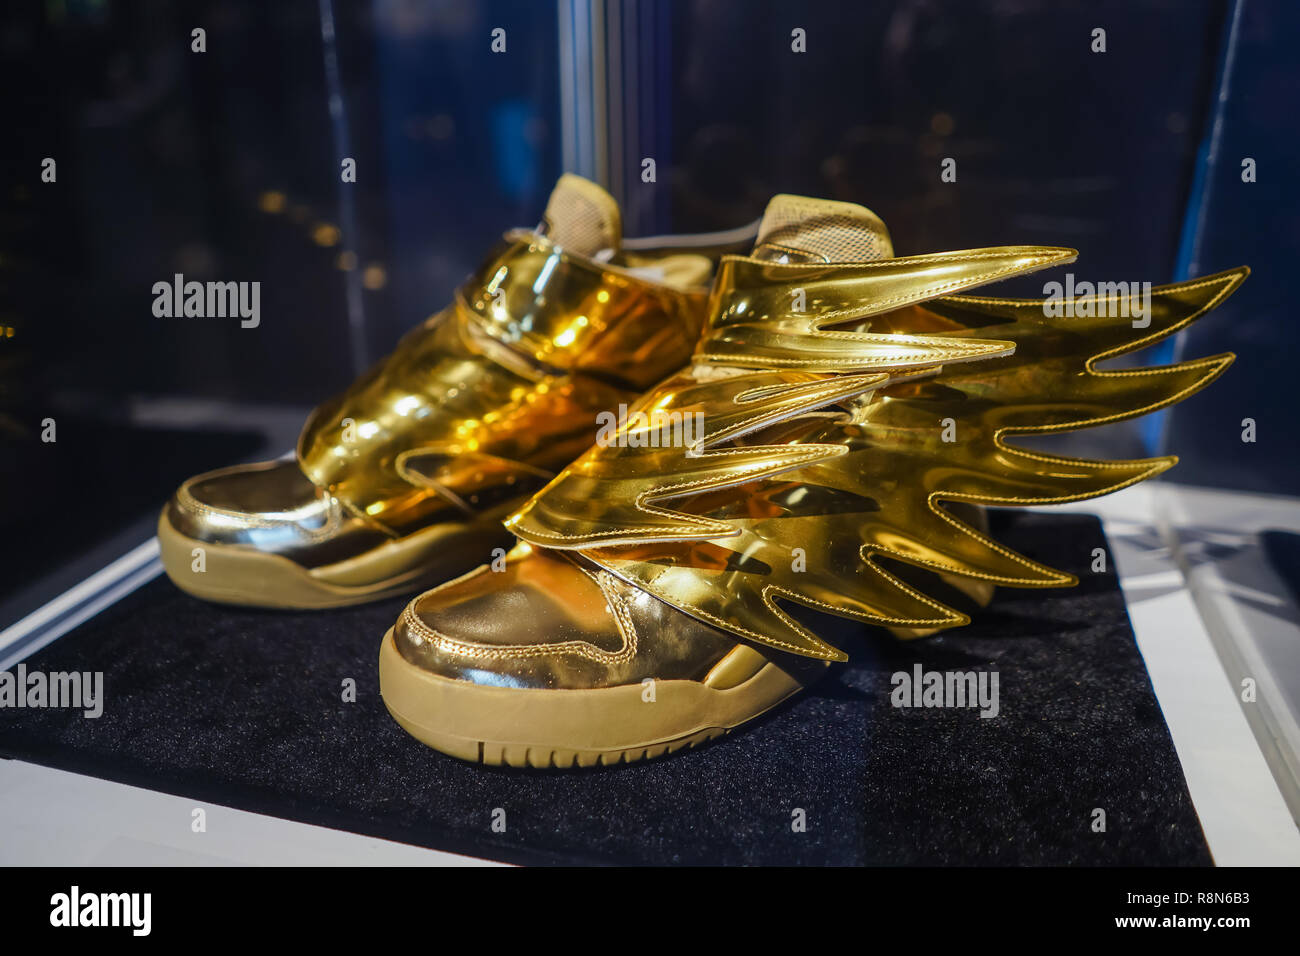 Goldene Turnschuhe für Jeremy Scott von adidas Schuhe Unternehmen  Stockfotografie - Alamy